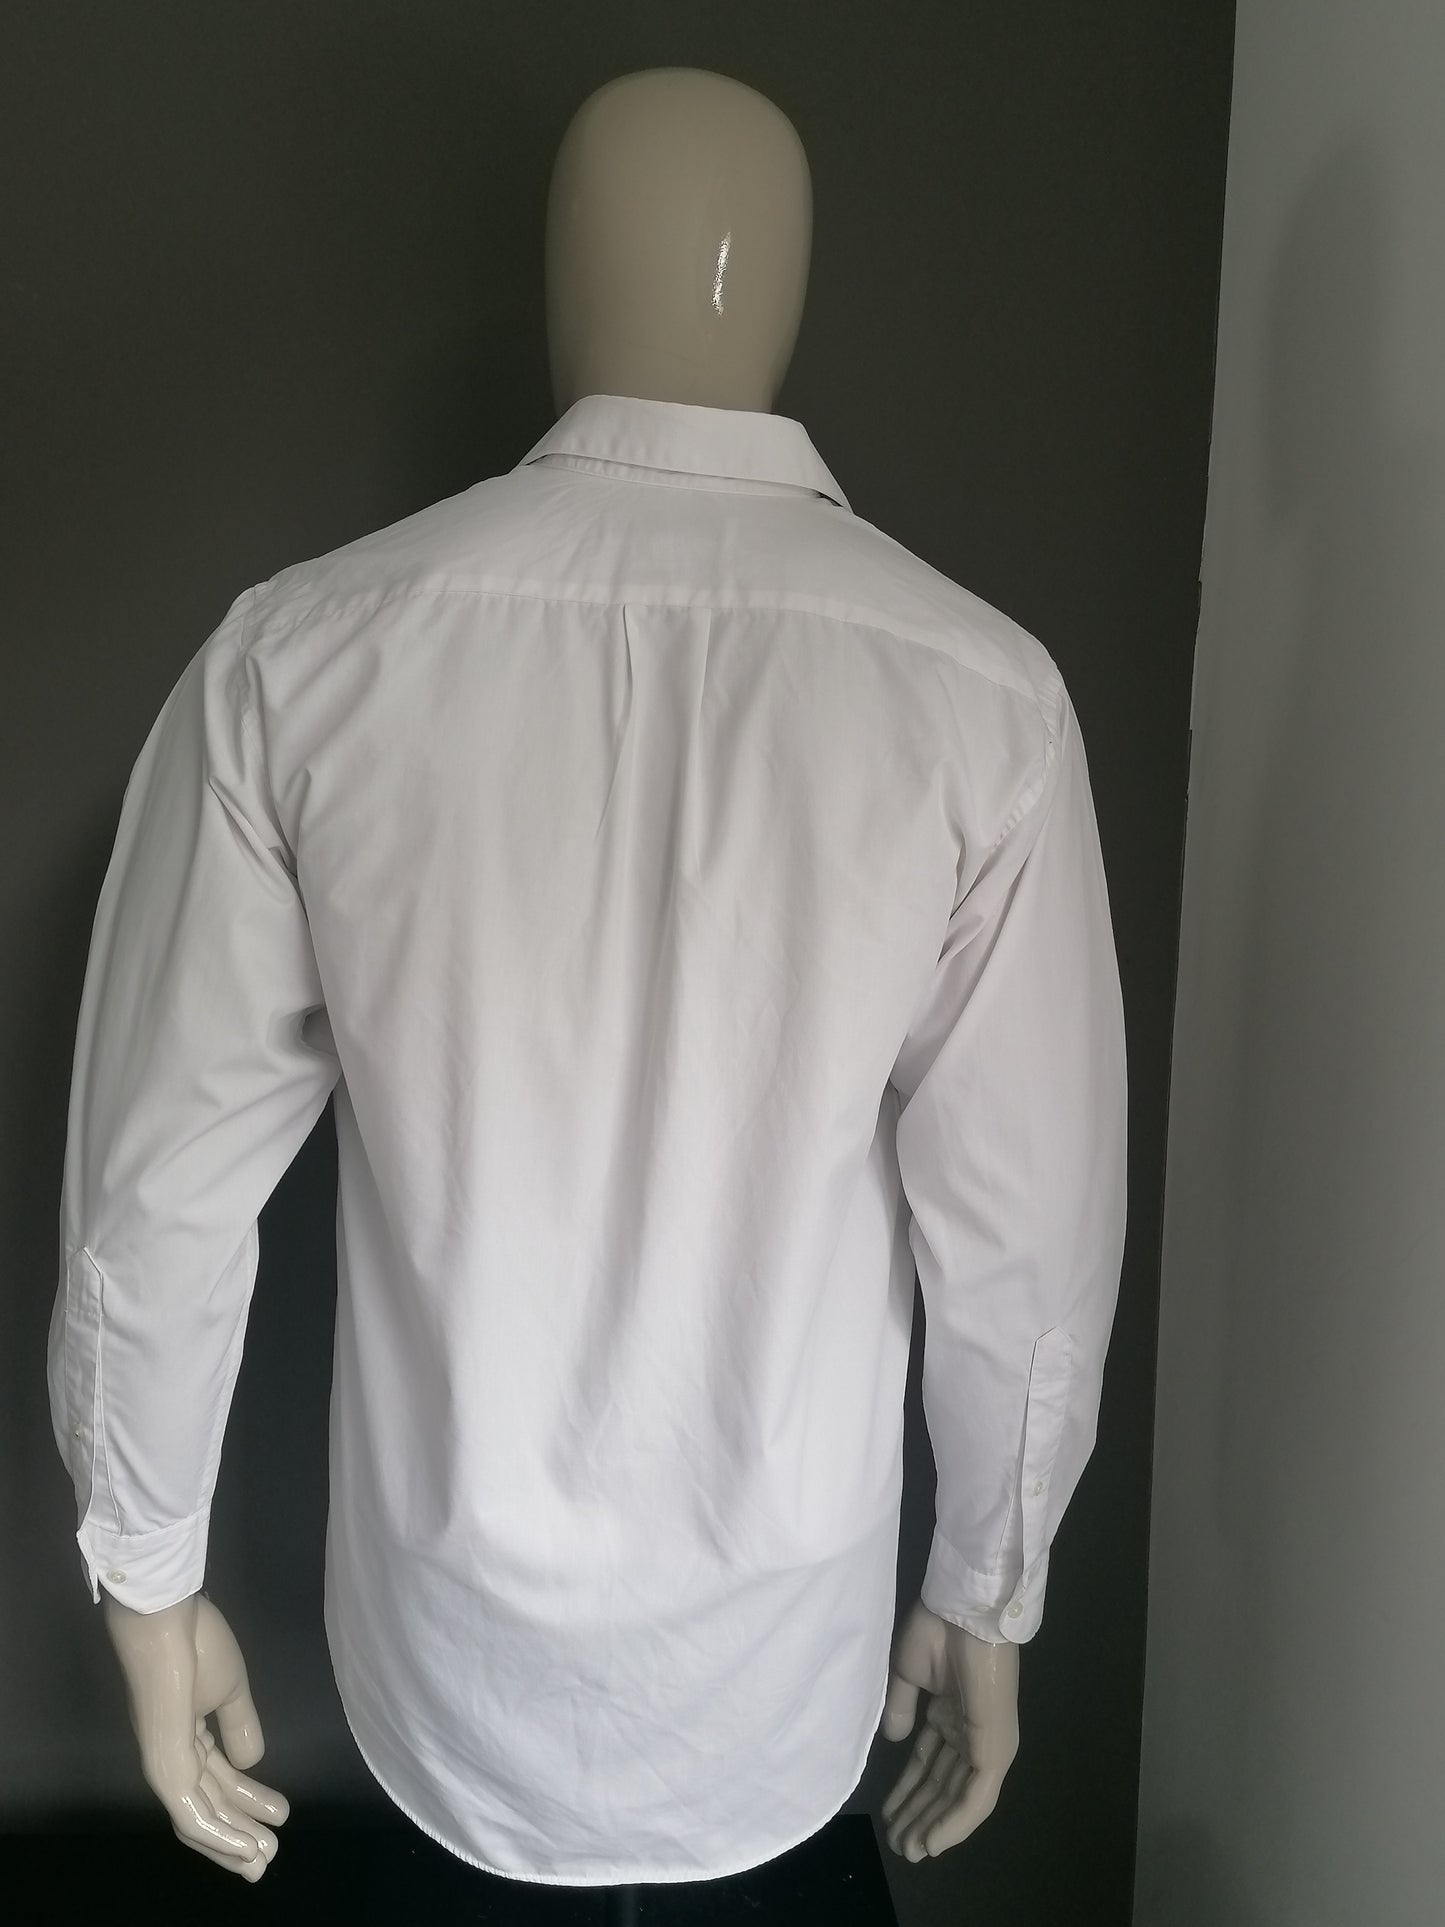 Perry Ellis overhemd. Wit gekleurd. Maat 42 / L. 65% Katoen & 35% Polyester.